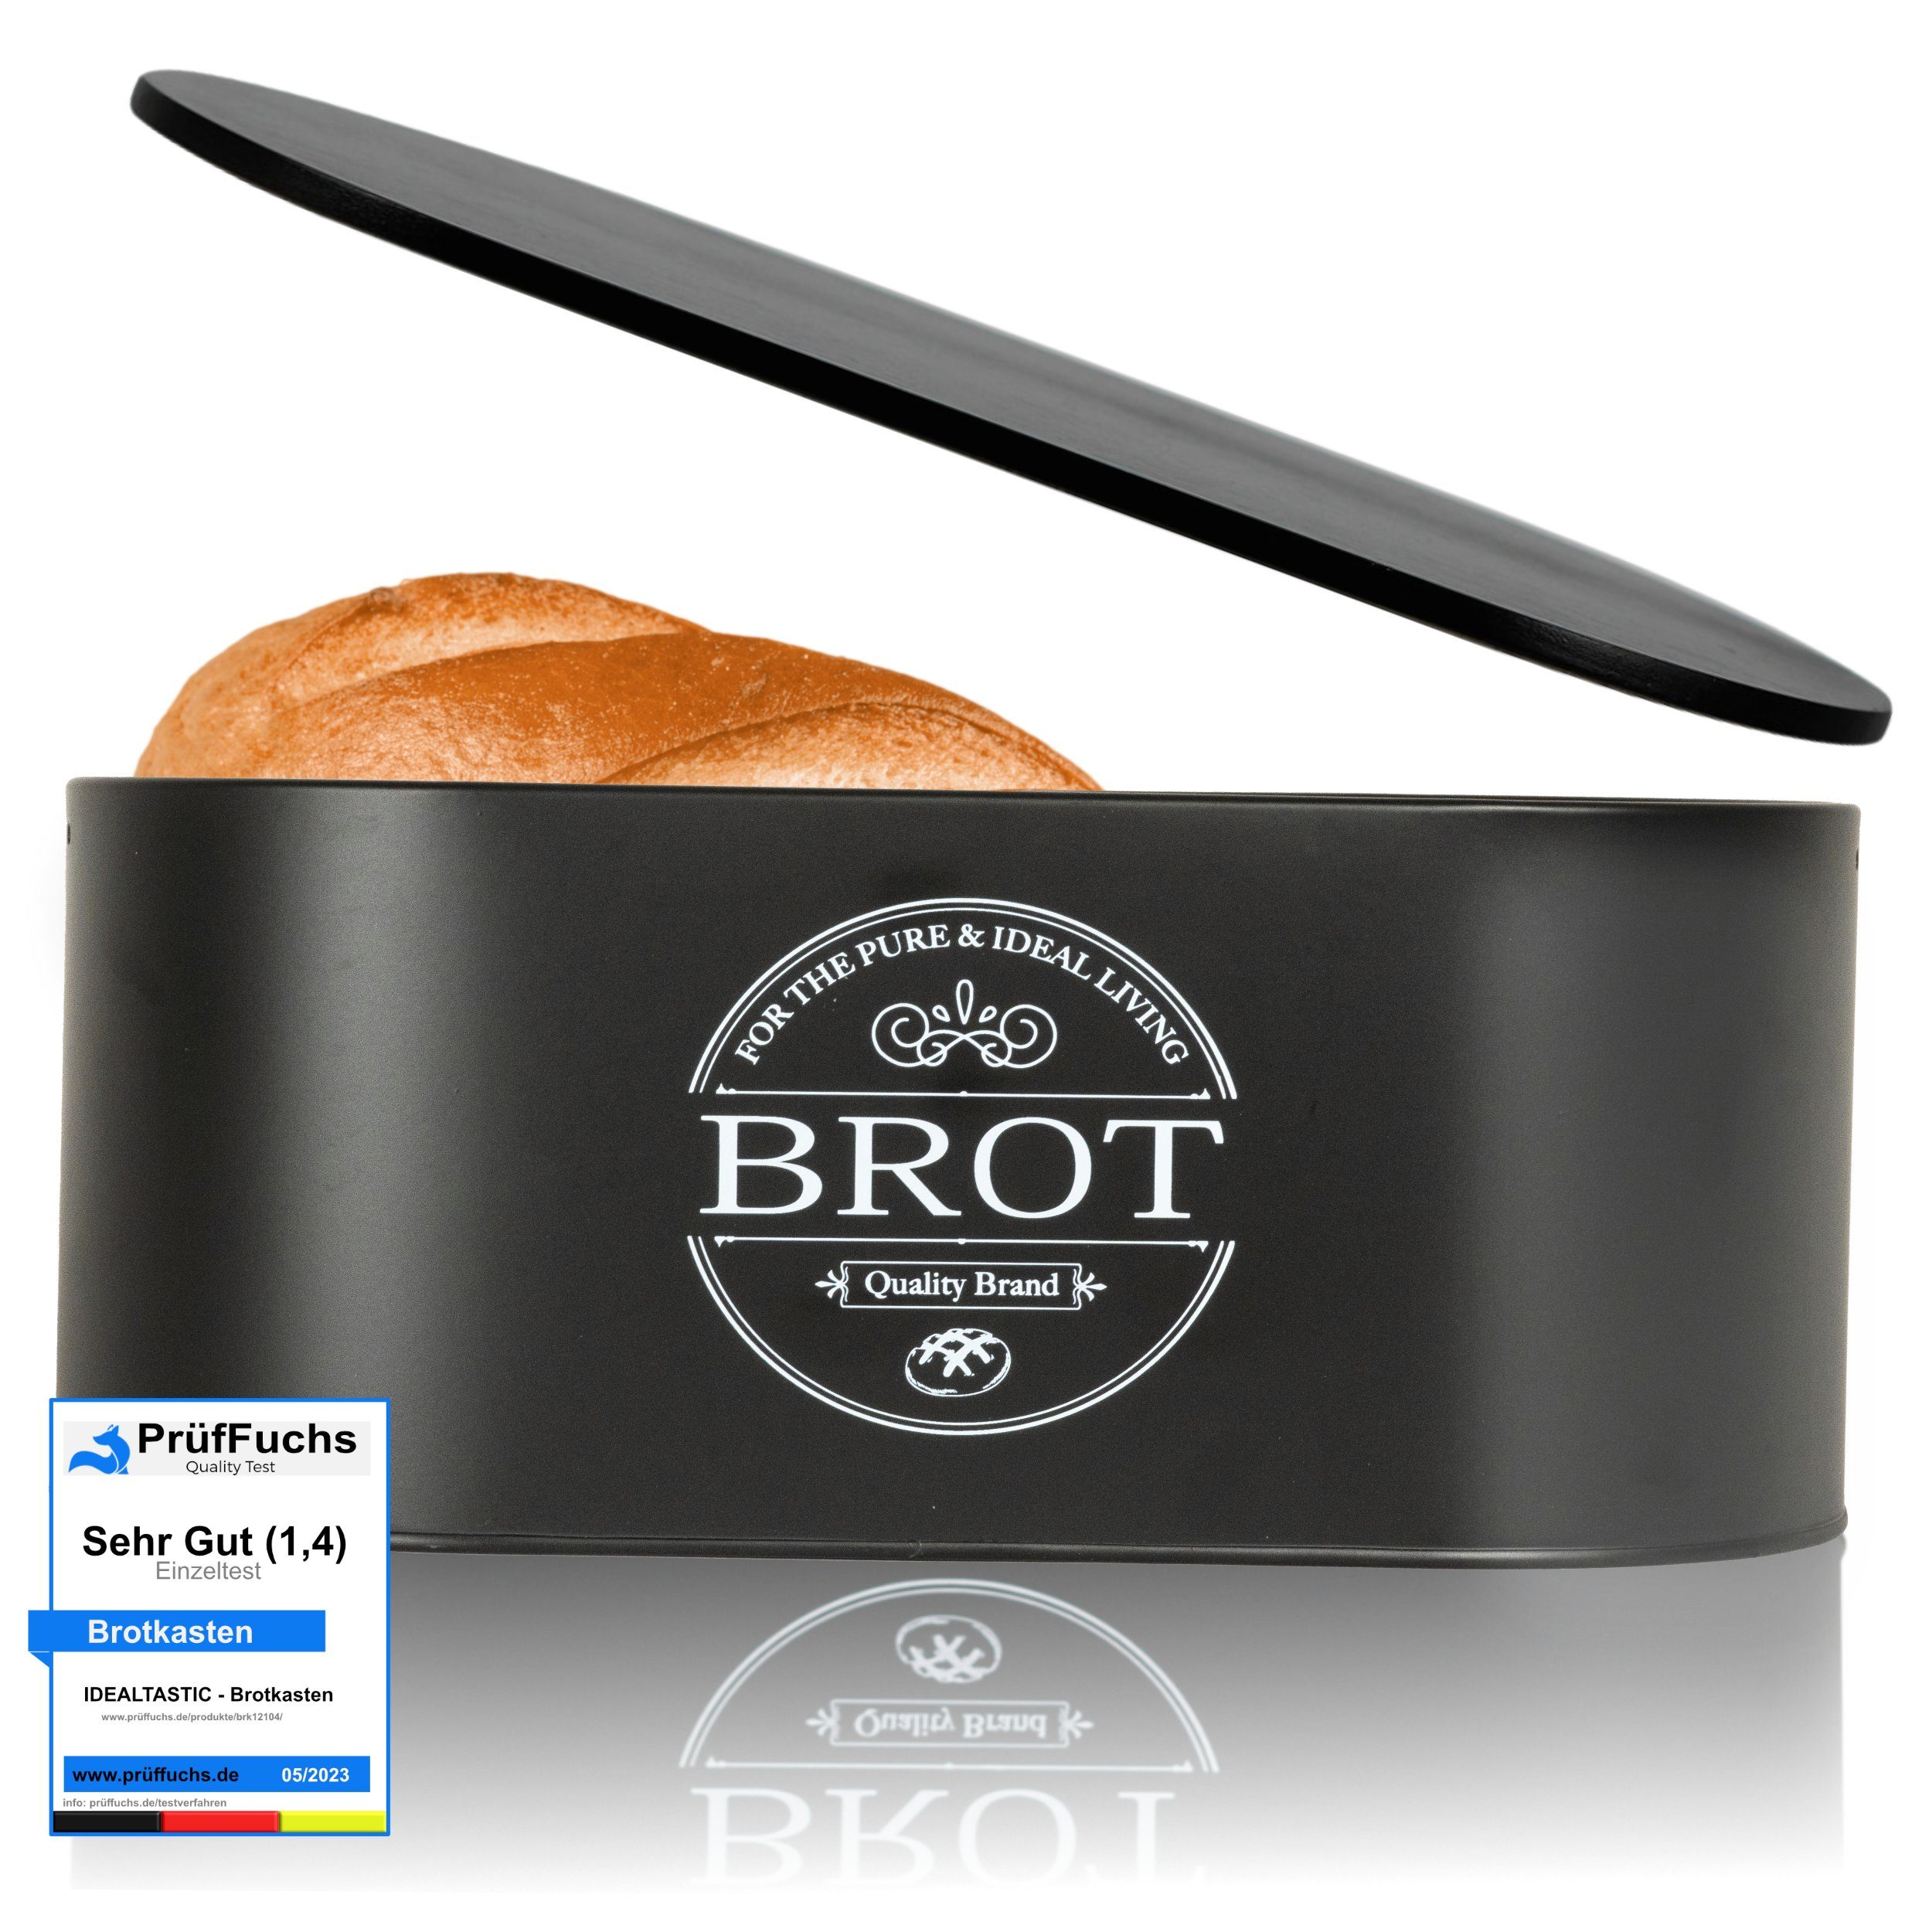 ideale entwickelter Luftzirkulation Premium für & Brotbox Brot 2-in-1 Brotkasten frischhaltende (Brot Aufbewahrung, Brotkästen), IDEALTASTIC Stahl, speziell Länger die Aufbewahrung, Brotkasten